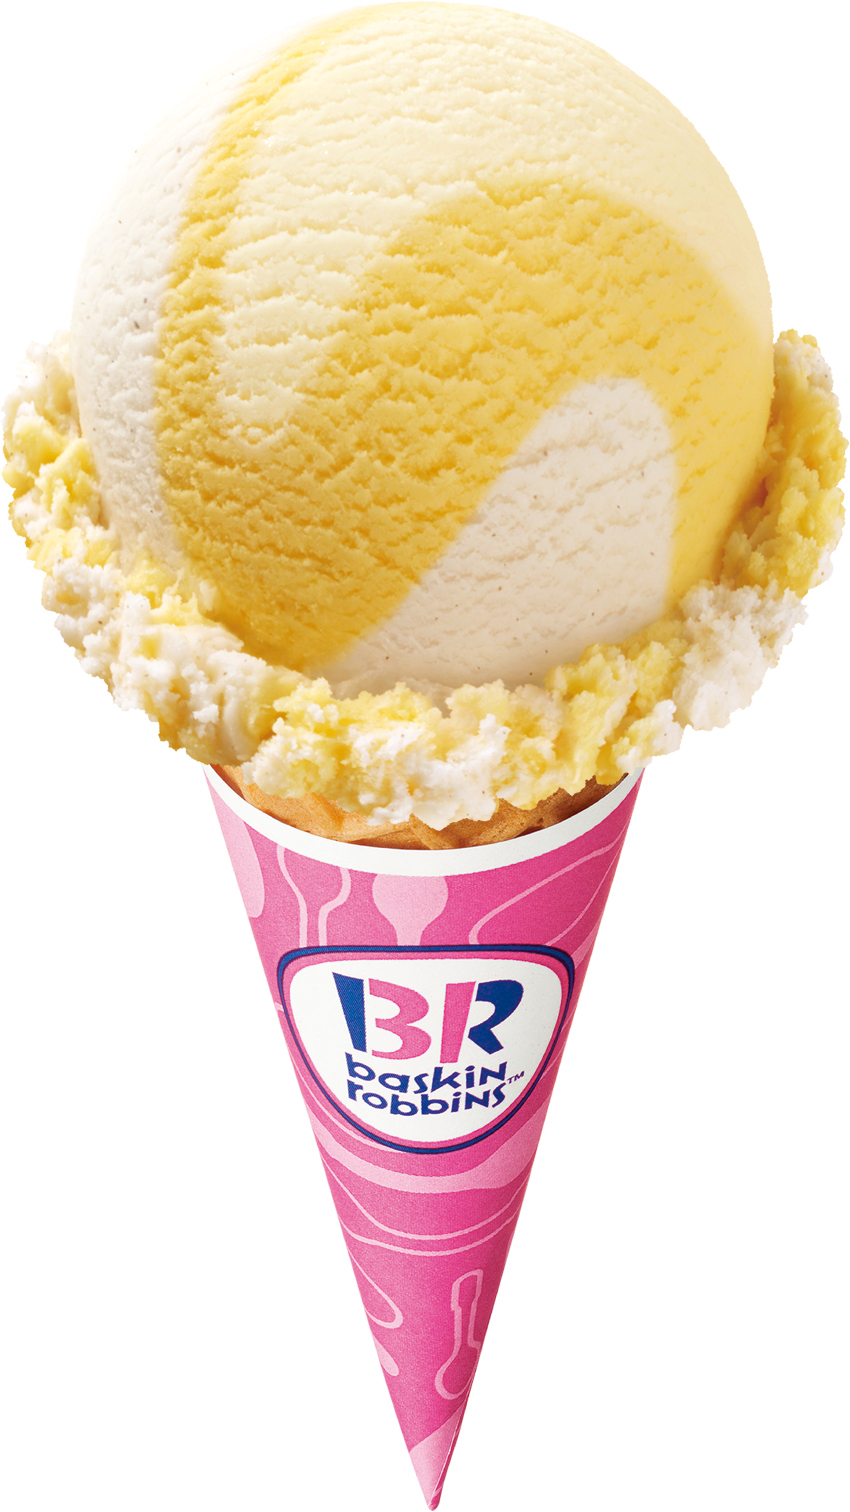 新しい時代 令和 の幕開け 最初のスタートを切るフレーバーはこれだ バニ バニ バニラ B R サーティワン アイスクリーム株式会社のプレスリリース